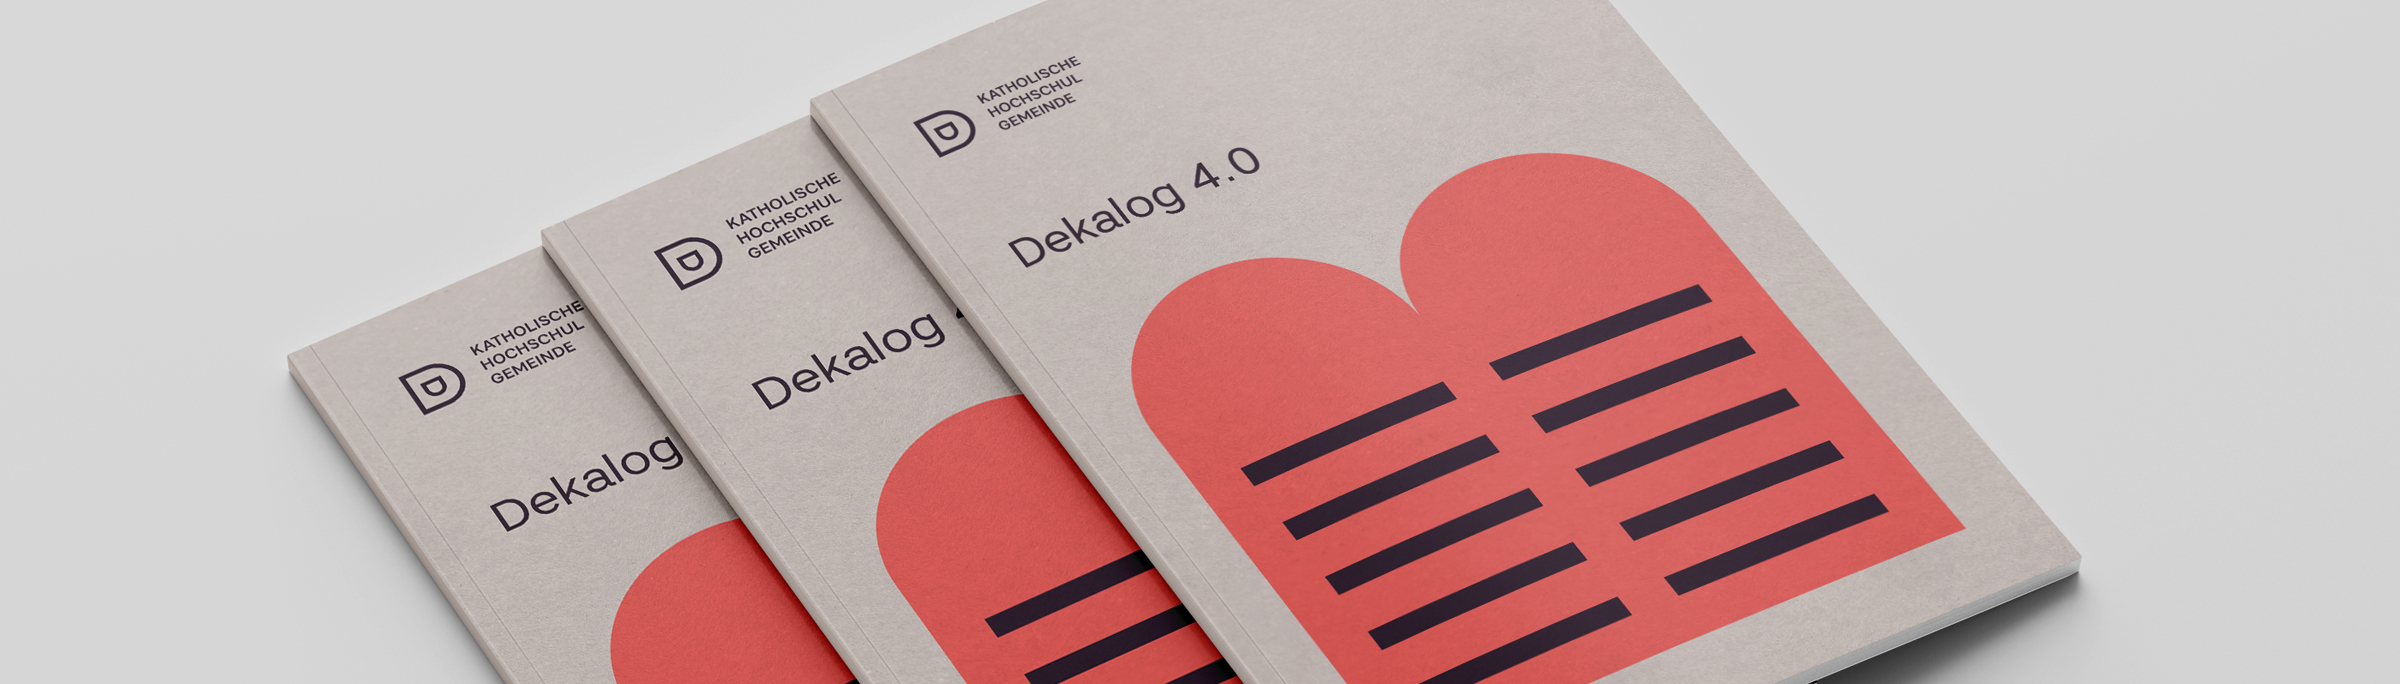 Katholische Hochschulgemeinde Düsseldorf Editorial Design DIN lang Flyer Titelseiten zum Thema Dekalog